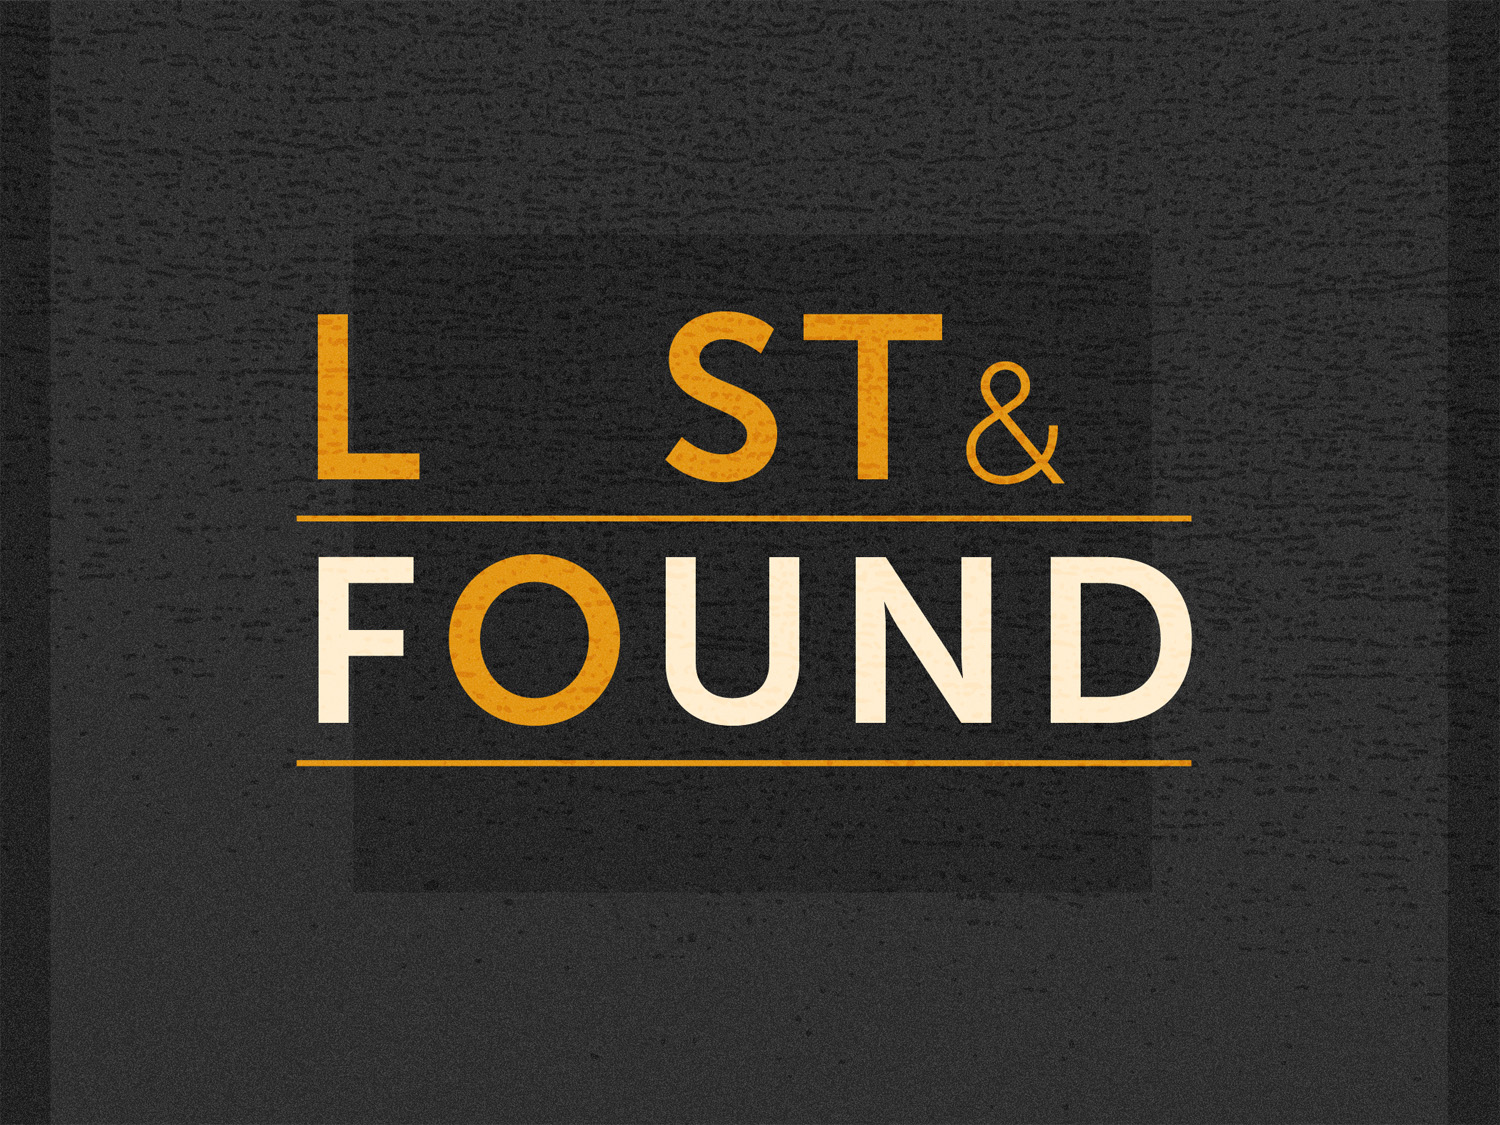 Lost & Found part 2